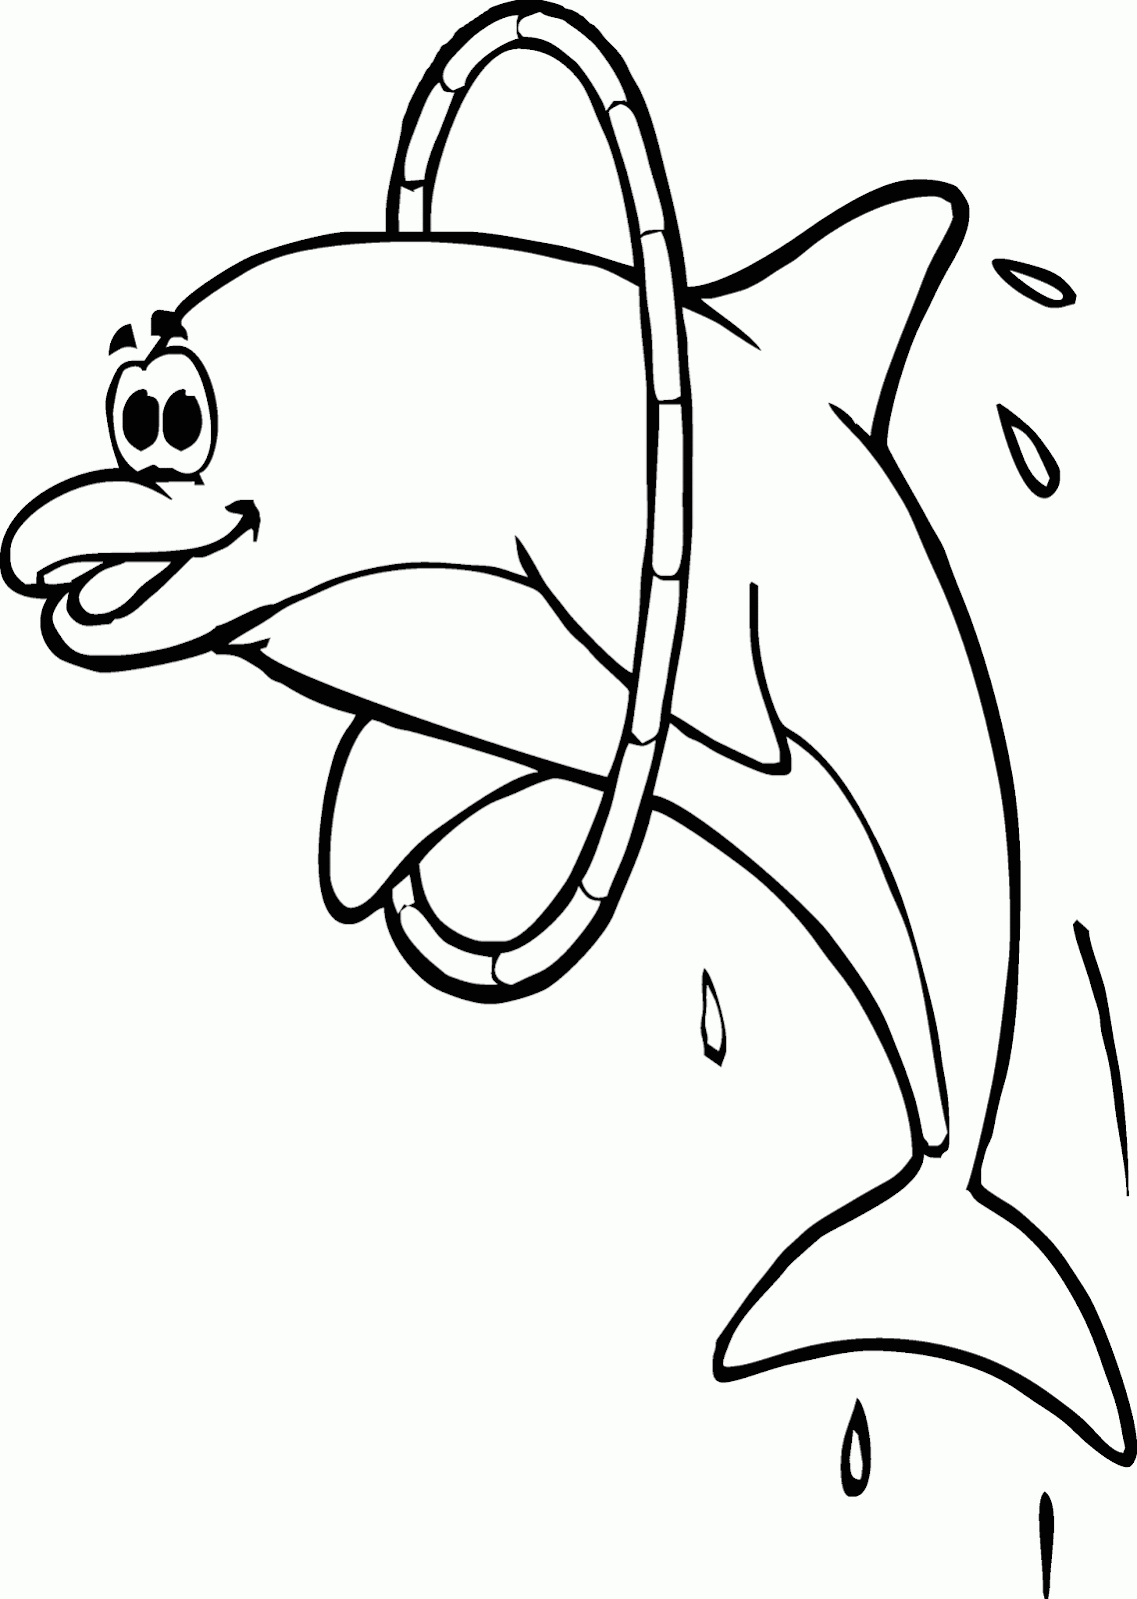 Mewarnai Gambar  Ikan  Lumba  Lumba  Sirkus Contoh Anak PAUD